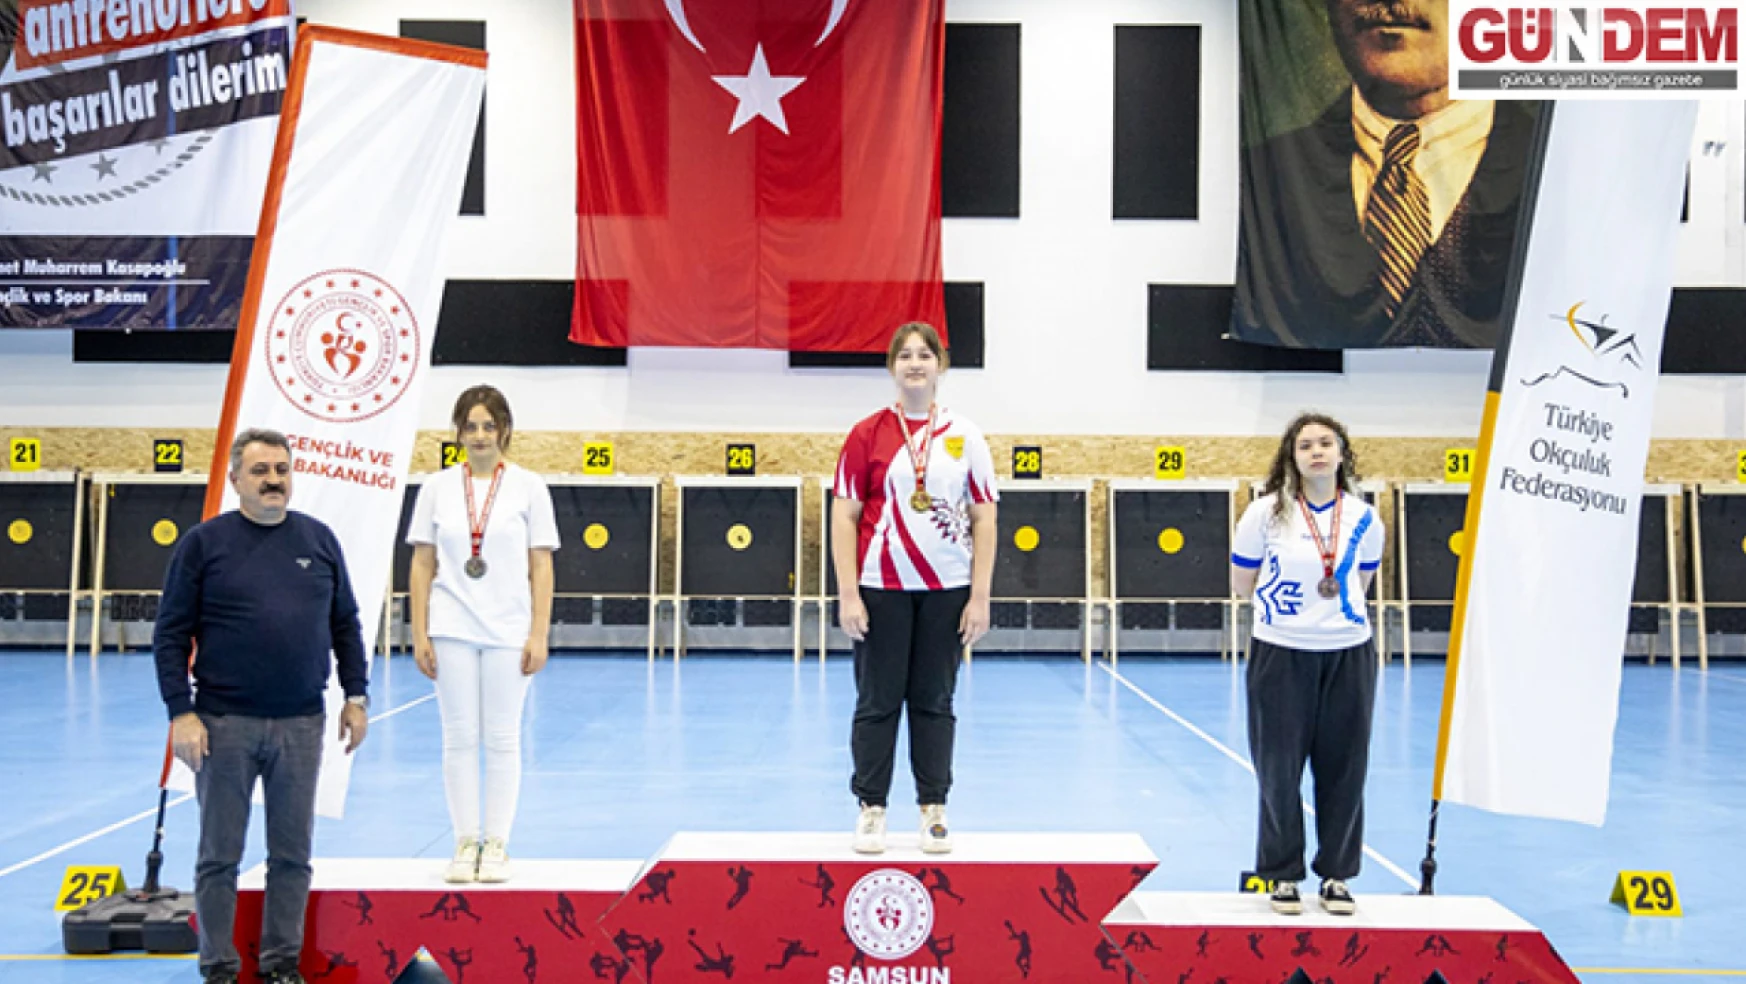 TED Edirne Koleji Öğrencisi okçuluk branşında Türkiye Şampiyonu oldu